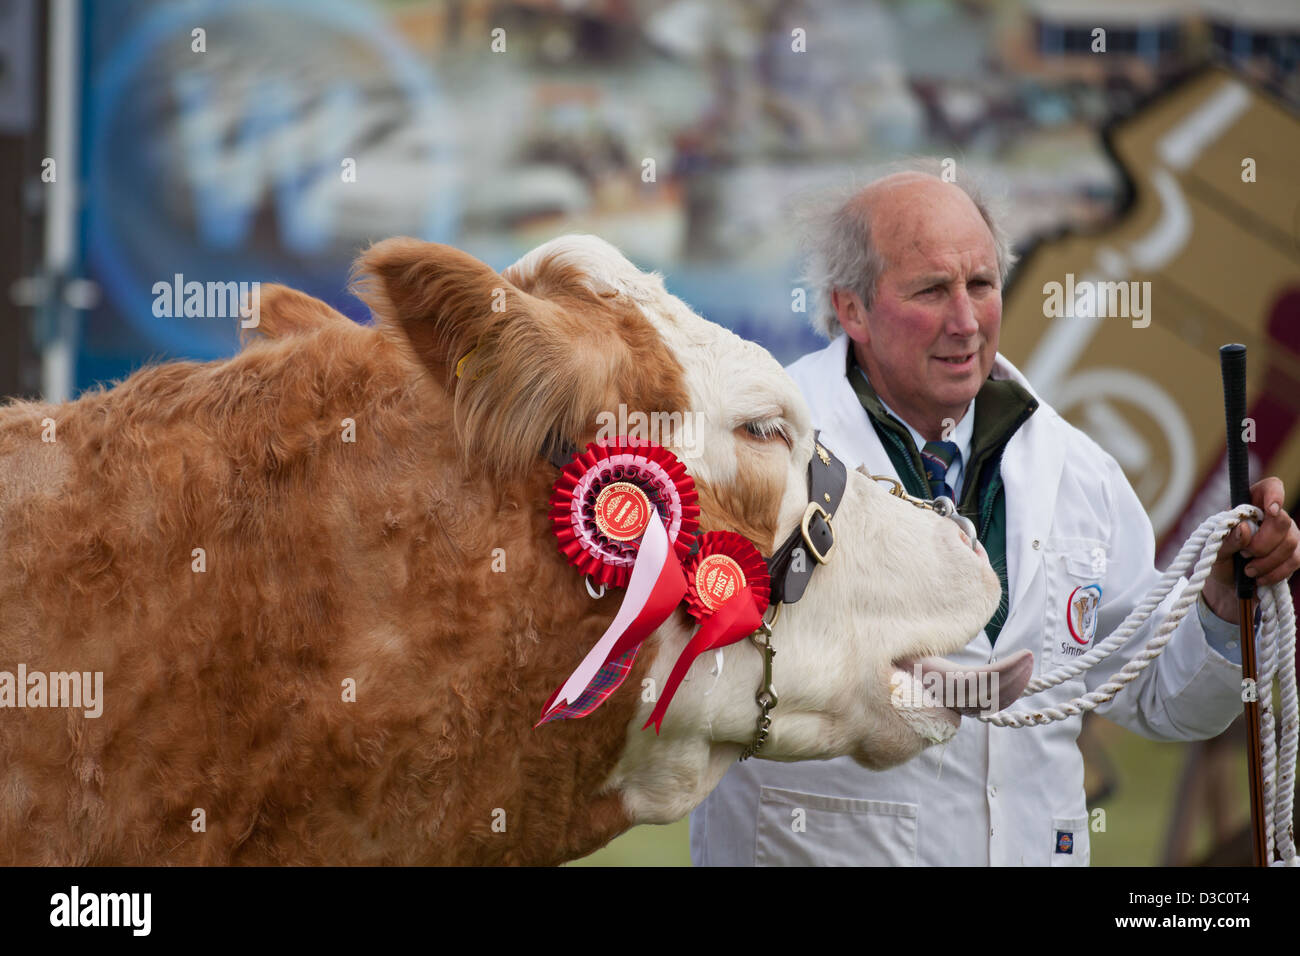 Un agriculteur montrant son prix vache Simmental à Dalry Farmer's Show, North Ayrshire, Ecosse. Banque D'Images